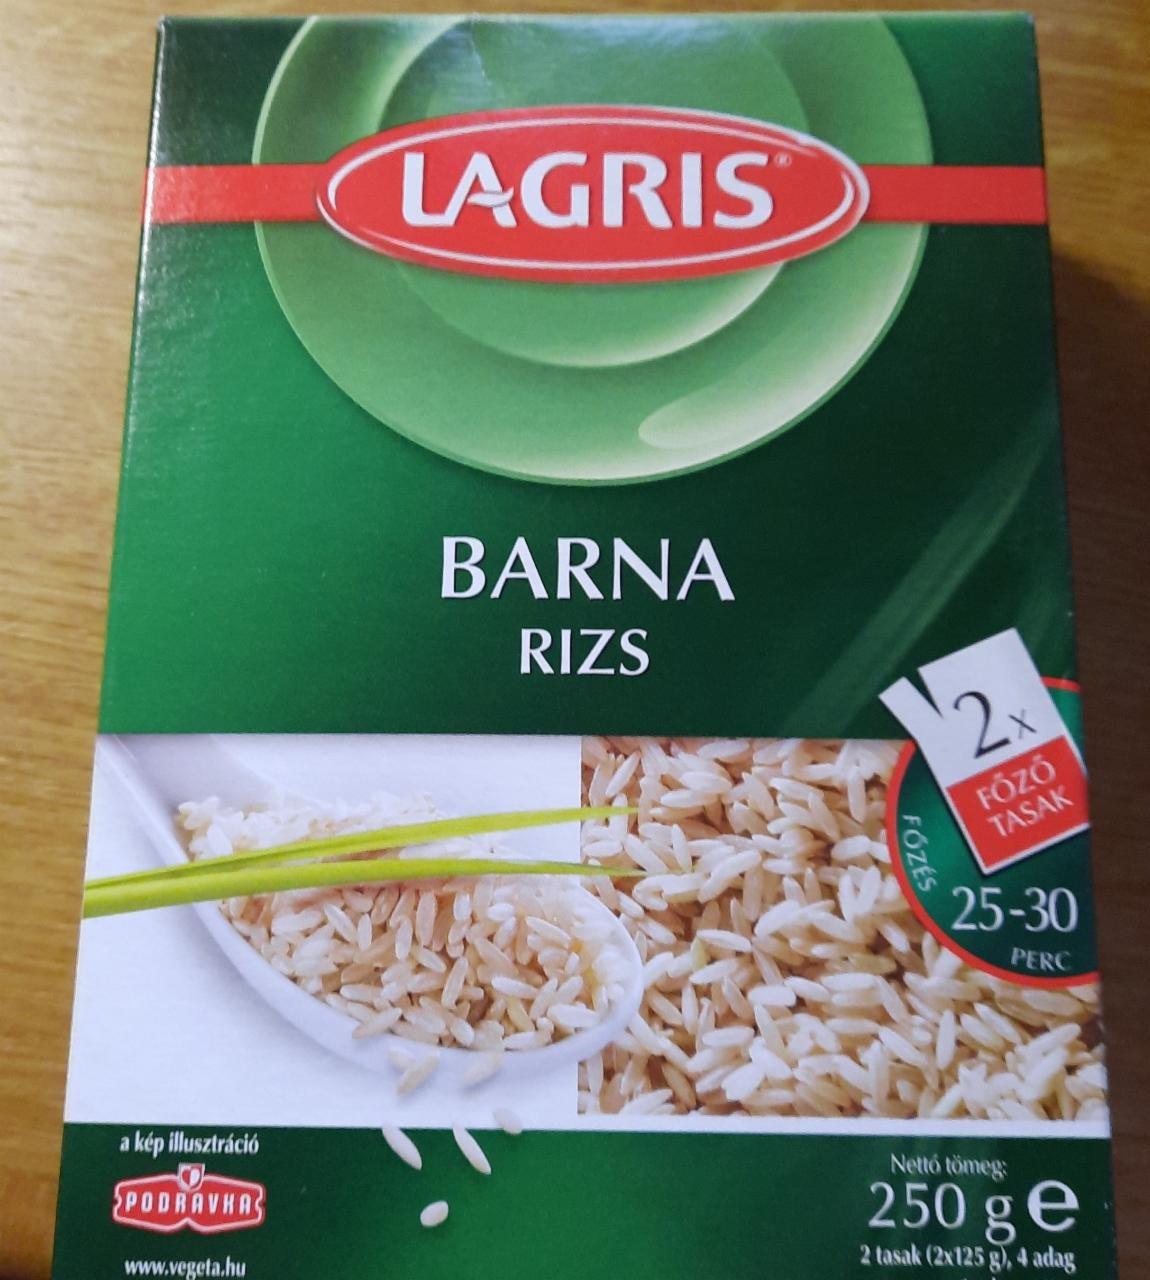 Képek - Barna rizs főzőtasakban Lagris